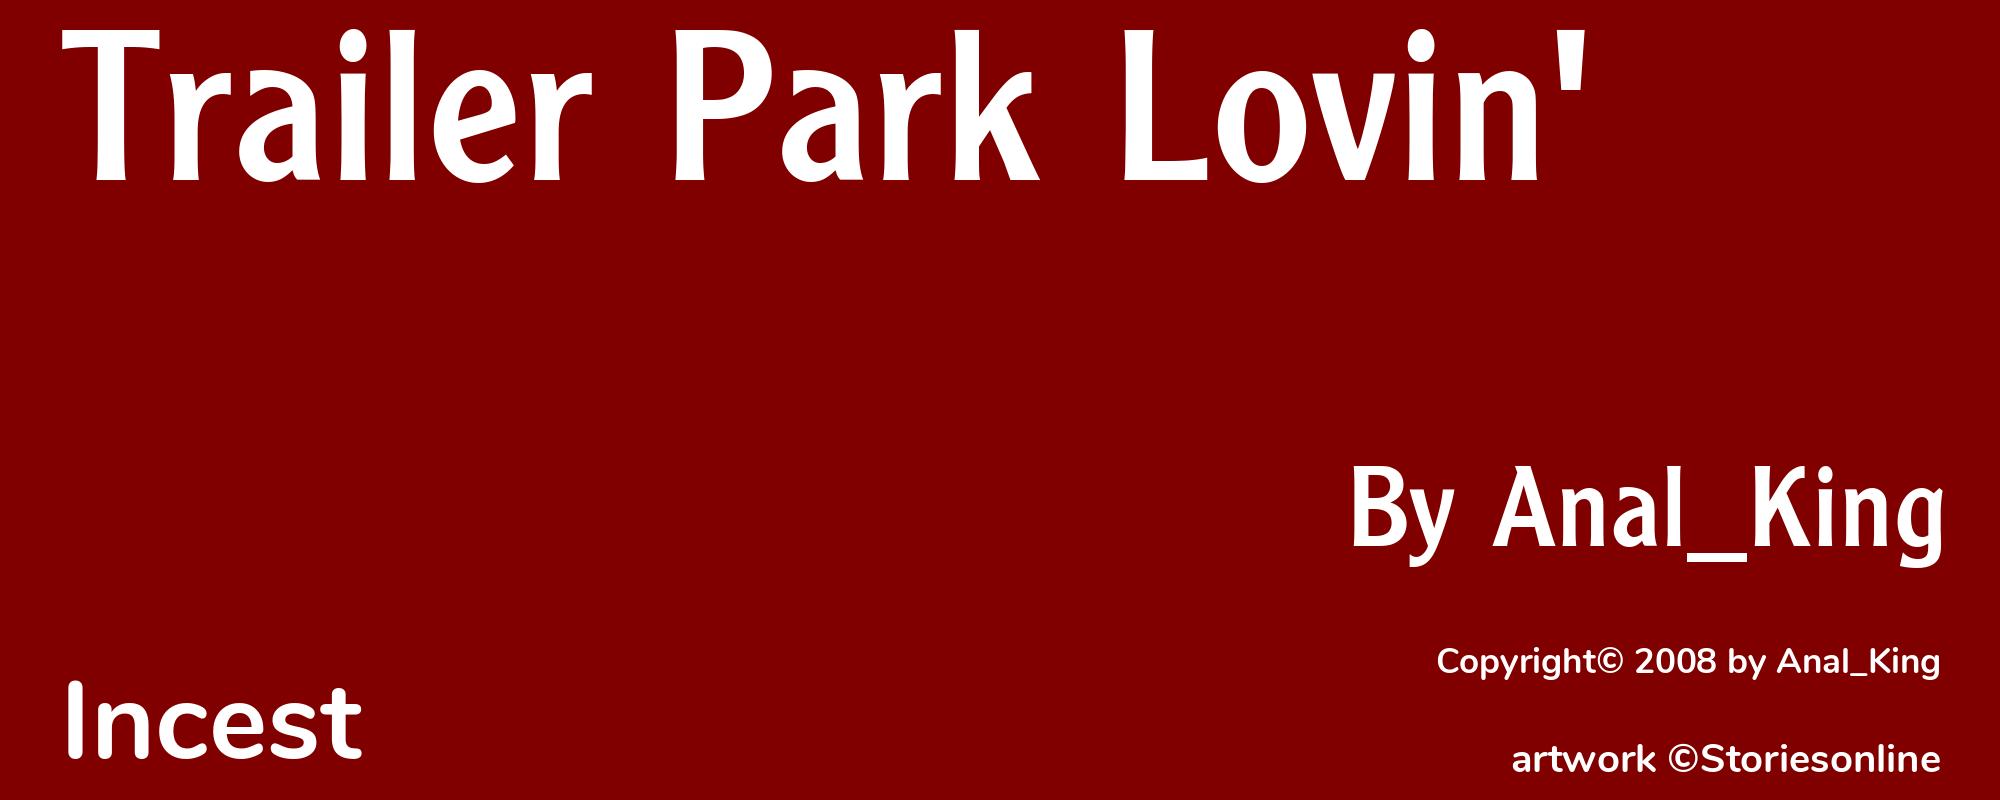 Trailer Park Lovin' - Cover